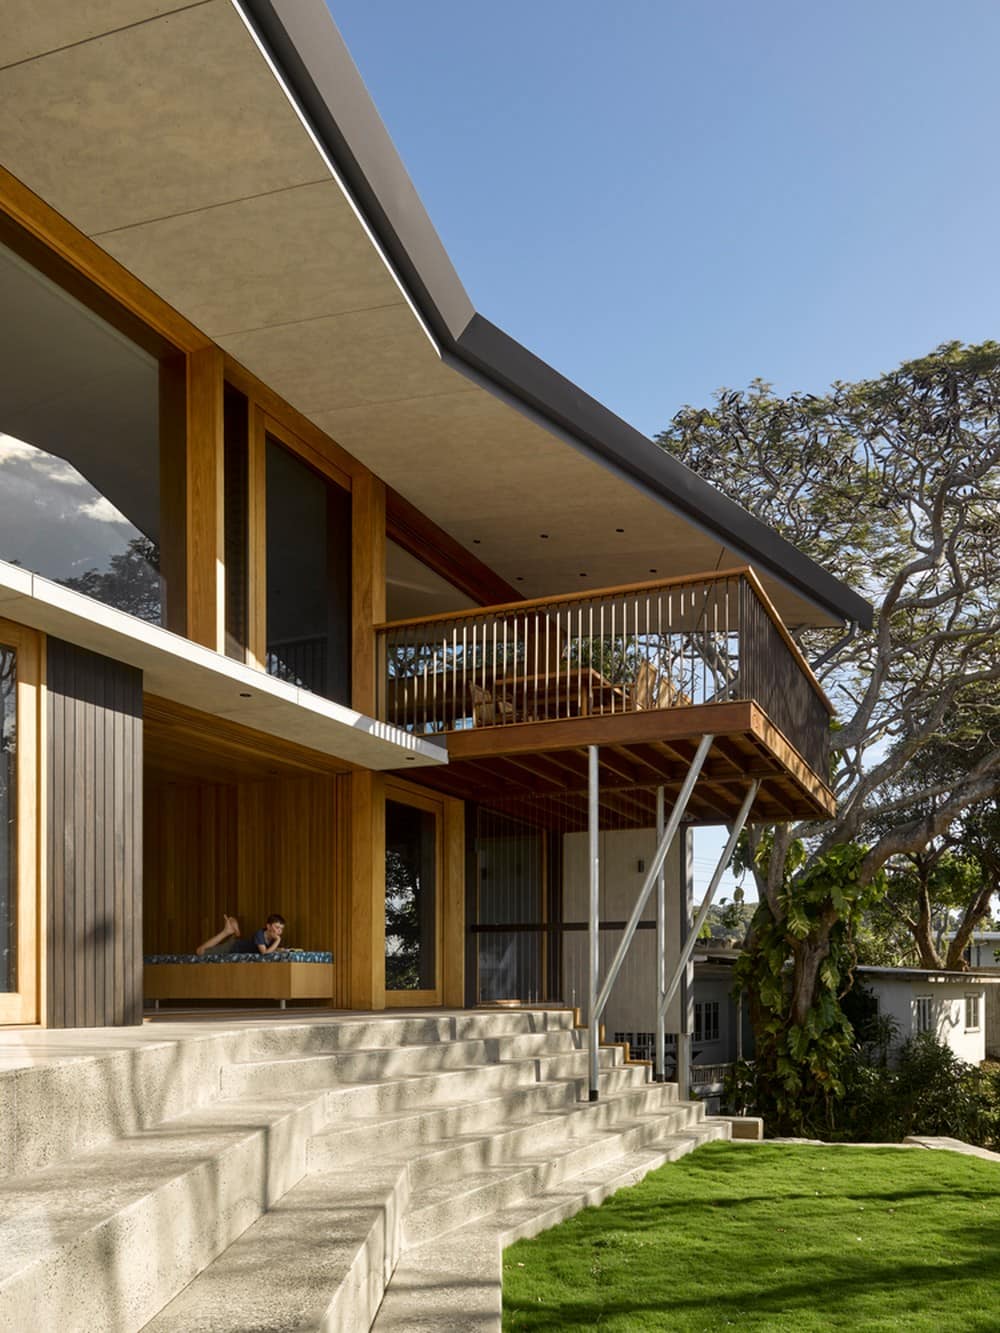 Nannygai House / Paul Butterworth Architect